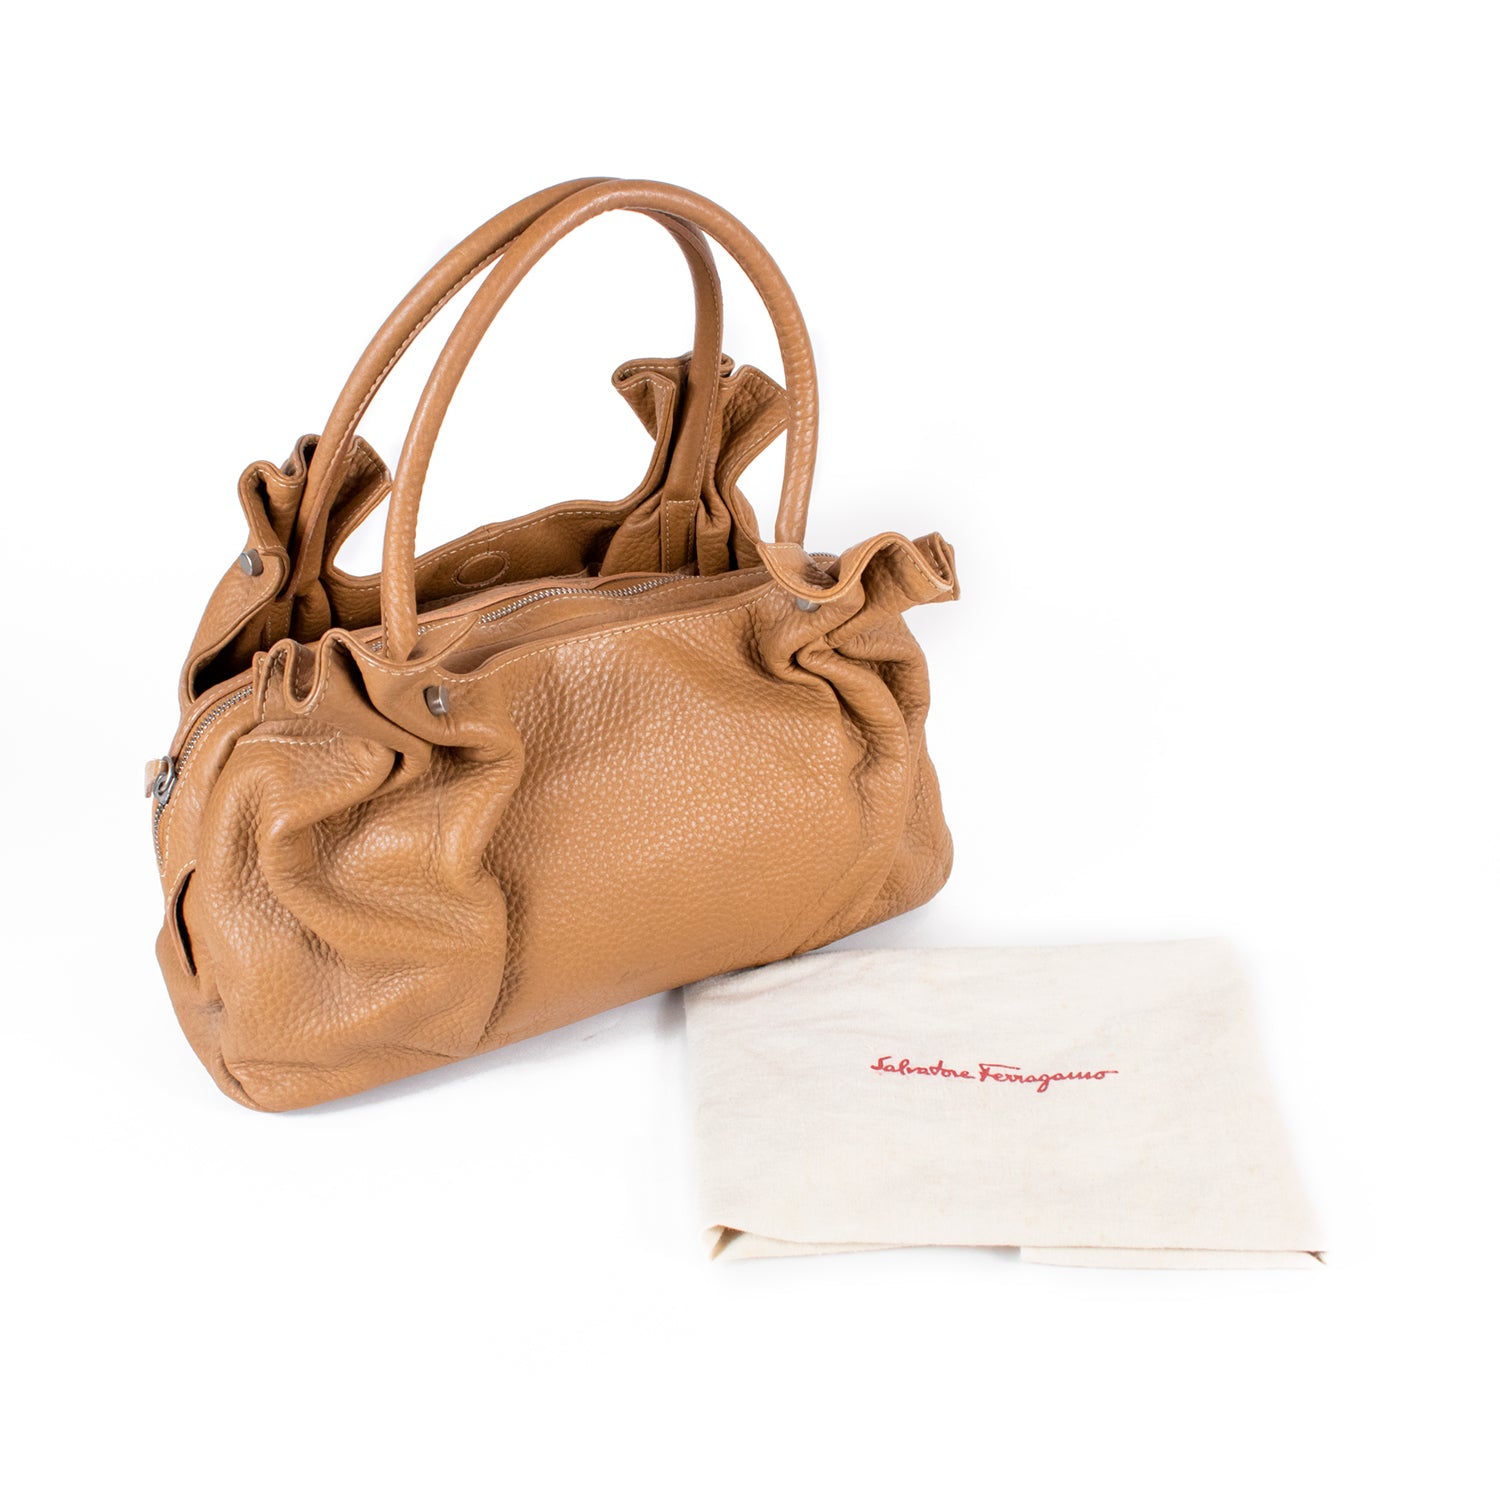 Ruffled Tan top handle bag